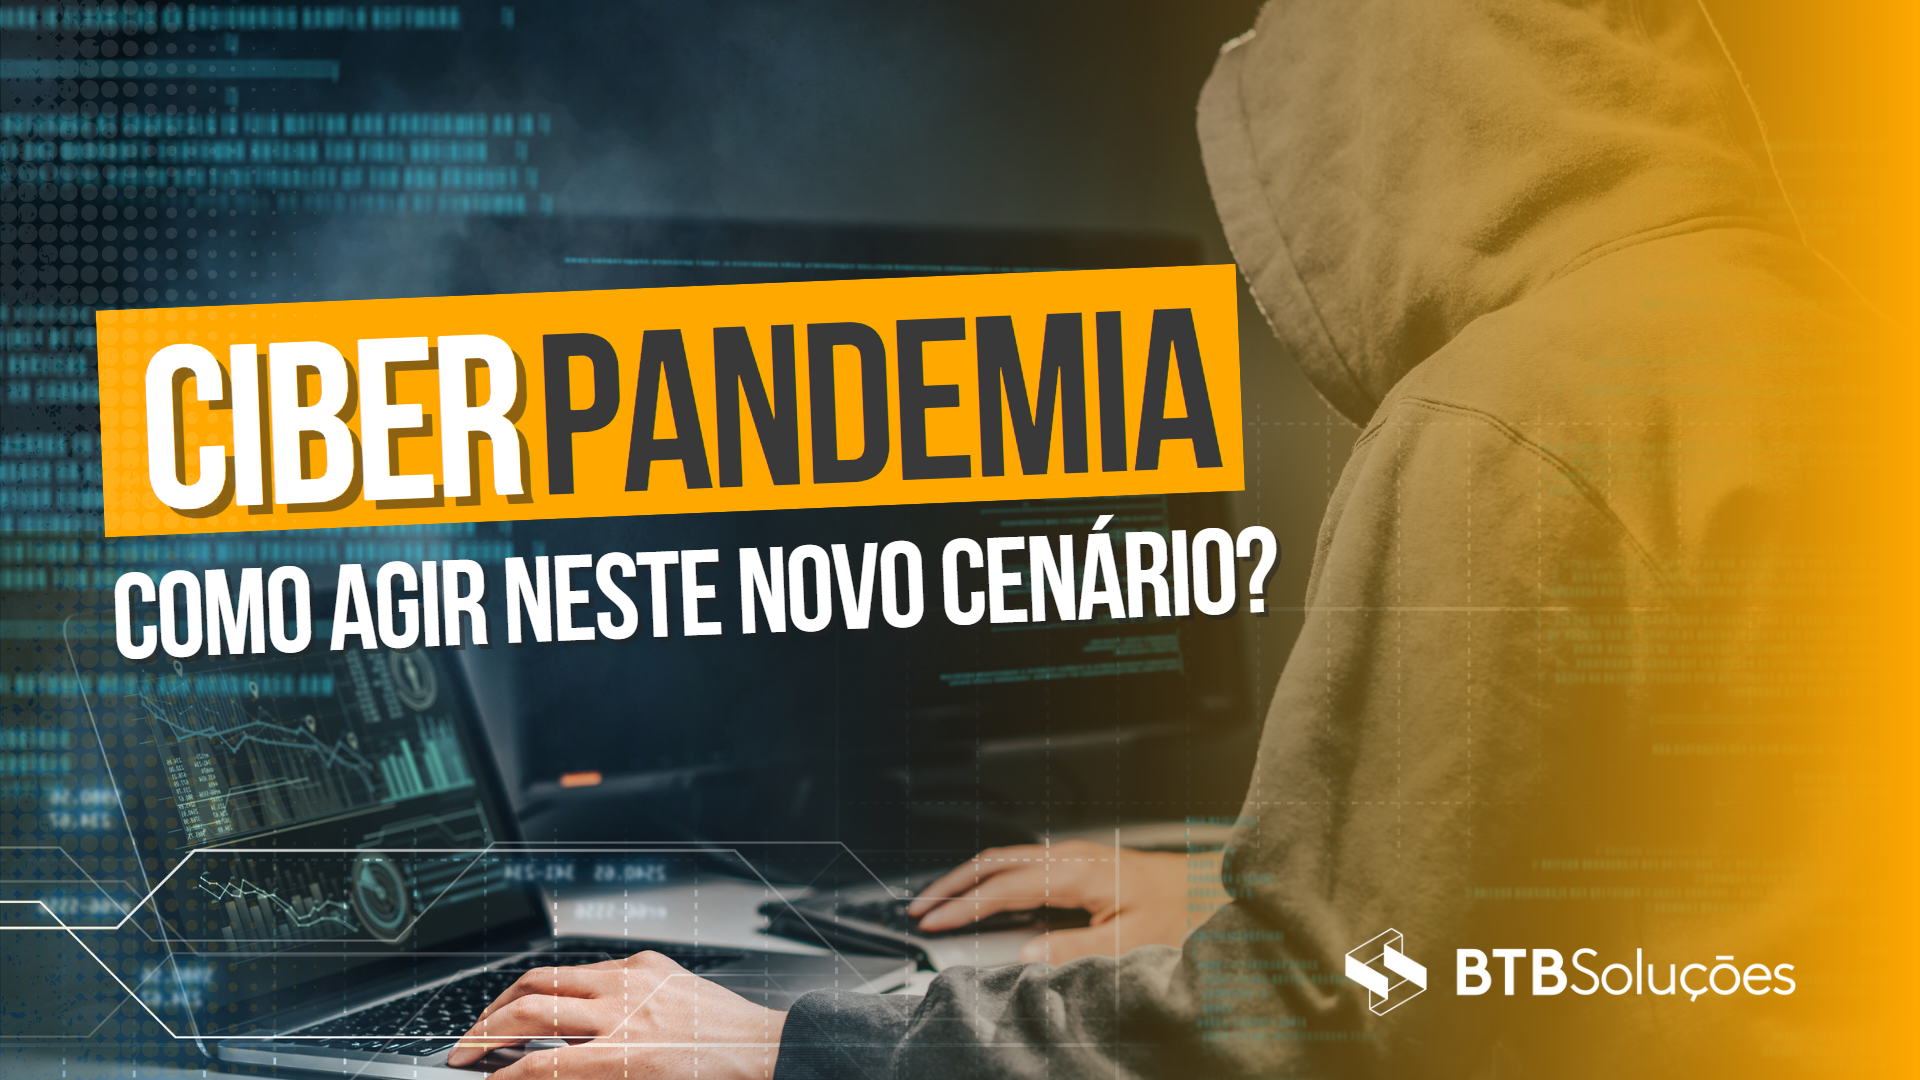 Ciber pandemia, sua empresa está preparada?